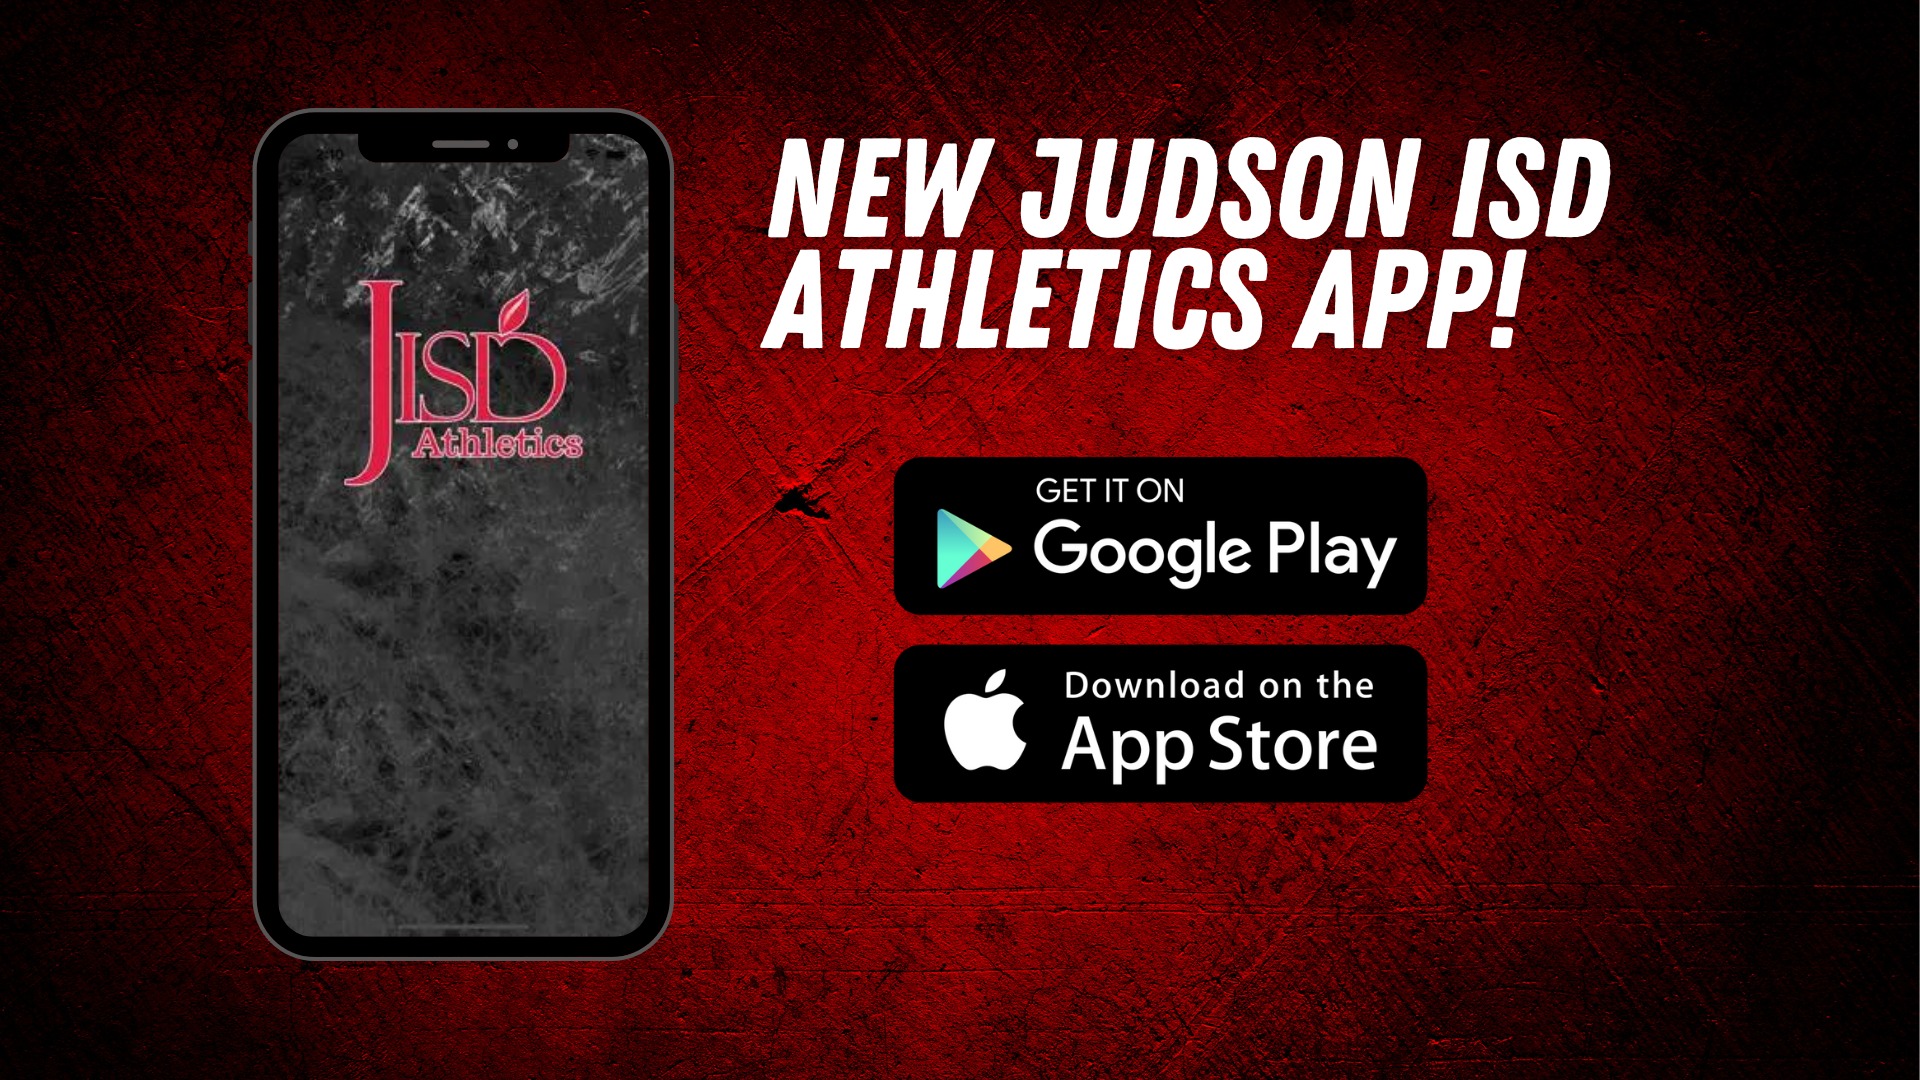 Metzger MSSlide 8 - Judson ISD Athletics releases new app